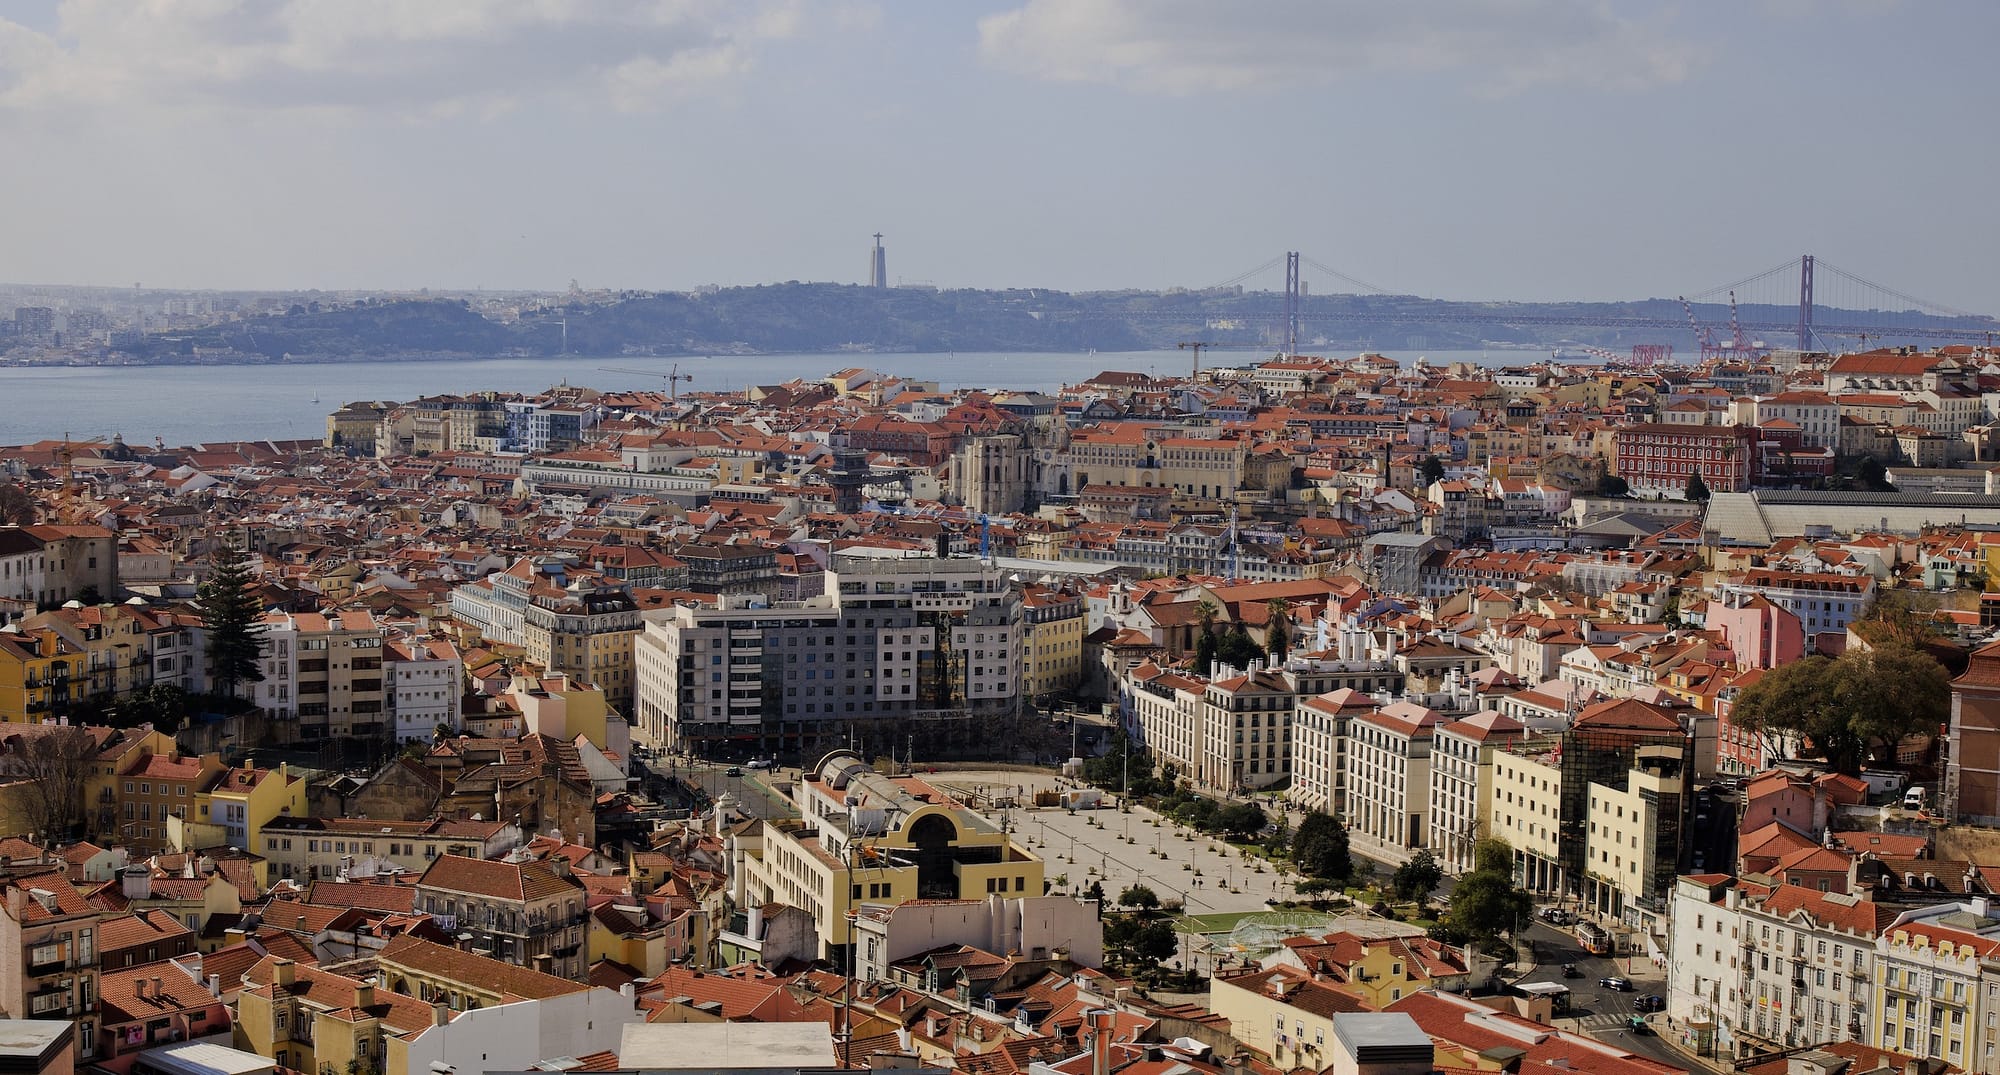 Safest city for digital nomads is Lisbon, Portugal